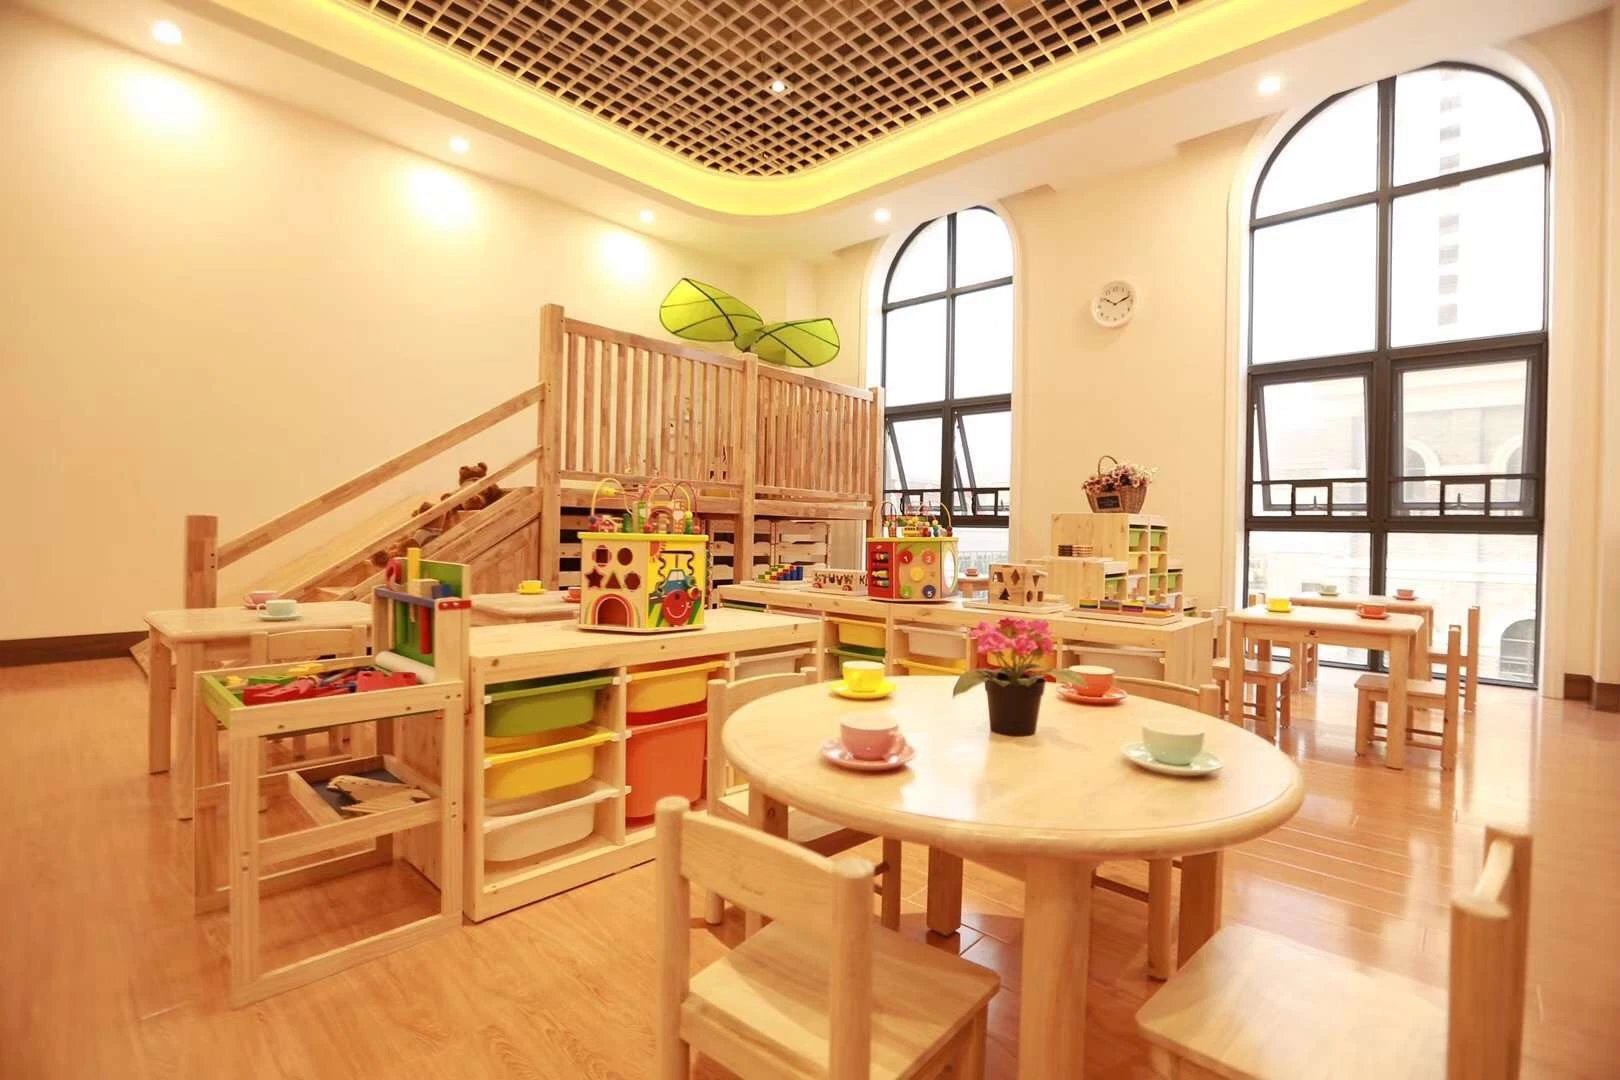 Enfants Les enfants chinois de meubles, de mobilier, meubles de salle de classe de l'école les enfants meubles, le fournisseur de meubles de la maternelle